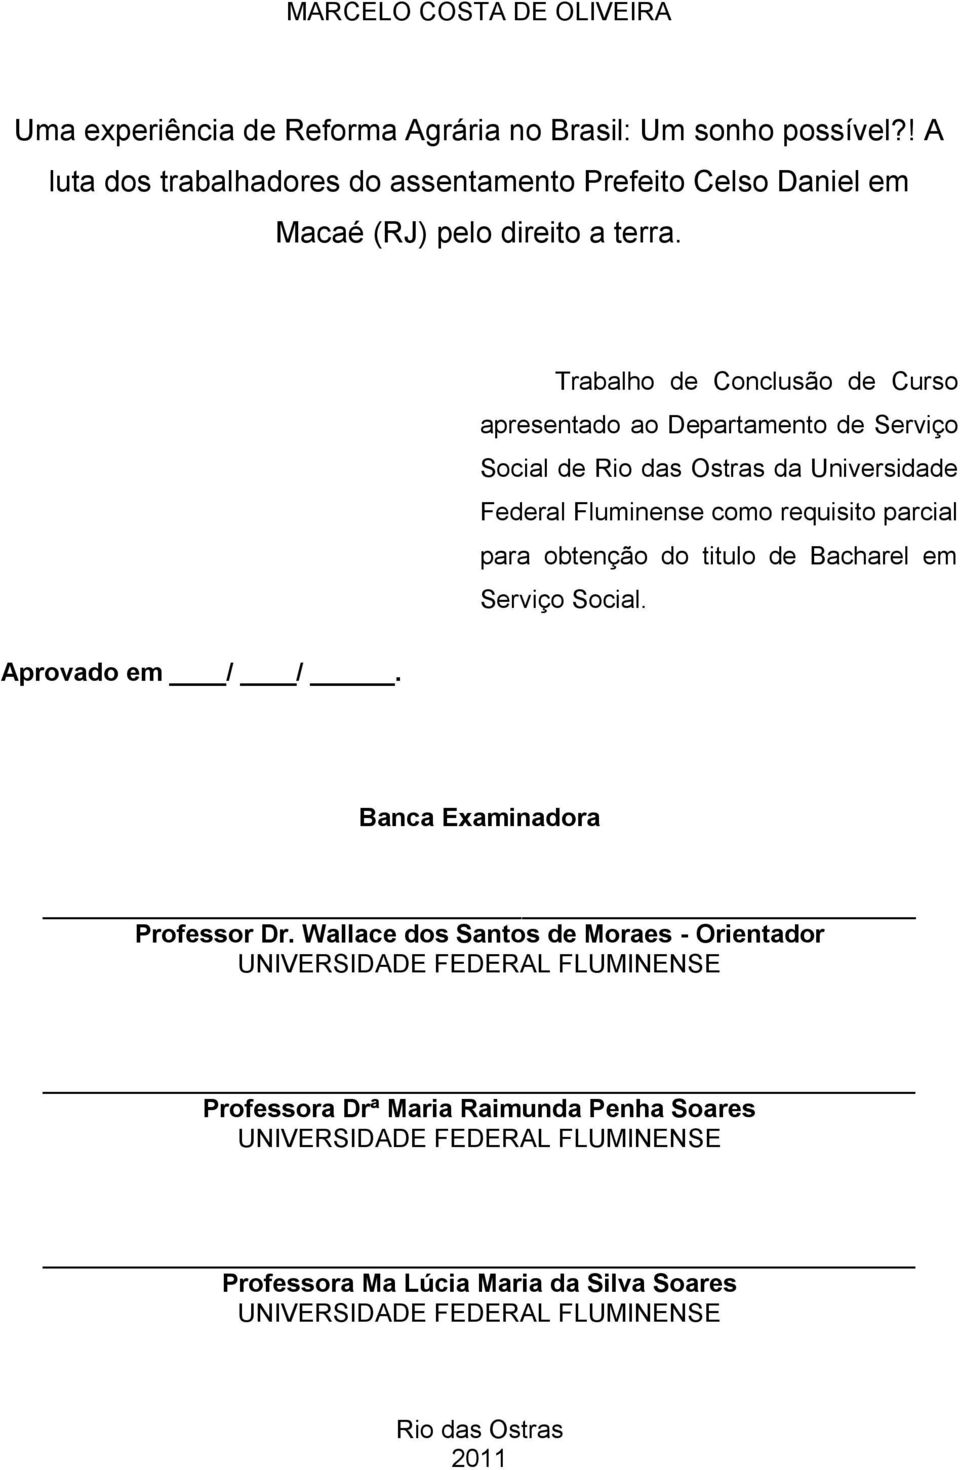 Trabalho de Conclusão de Curso apresentado ao Departamento de Serviço Social de Rio das Ostras da Universidade Federal Fluminense como requisito parcial para obtenção do